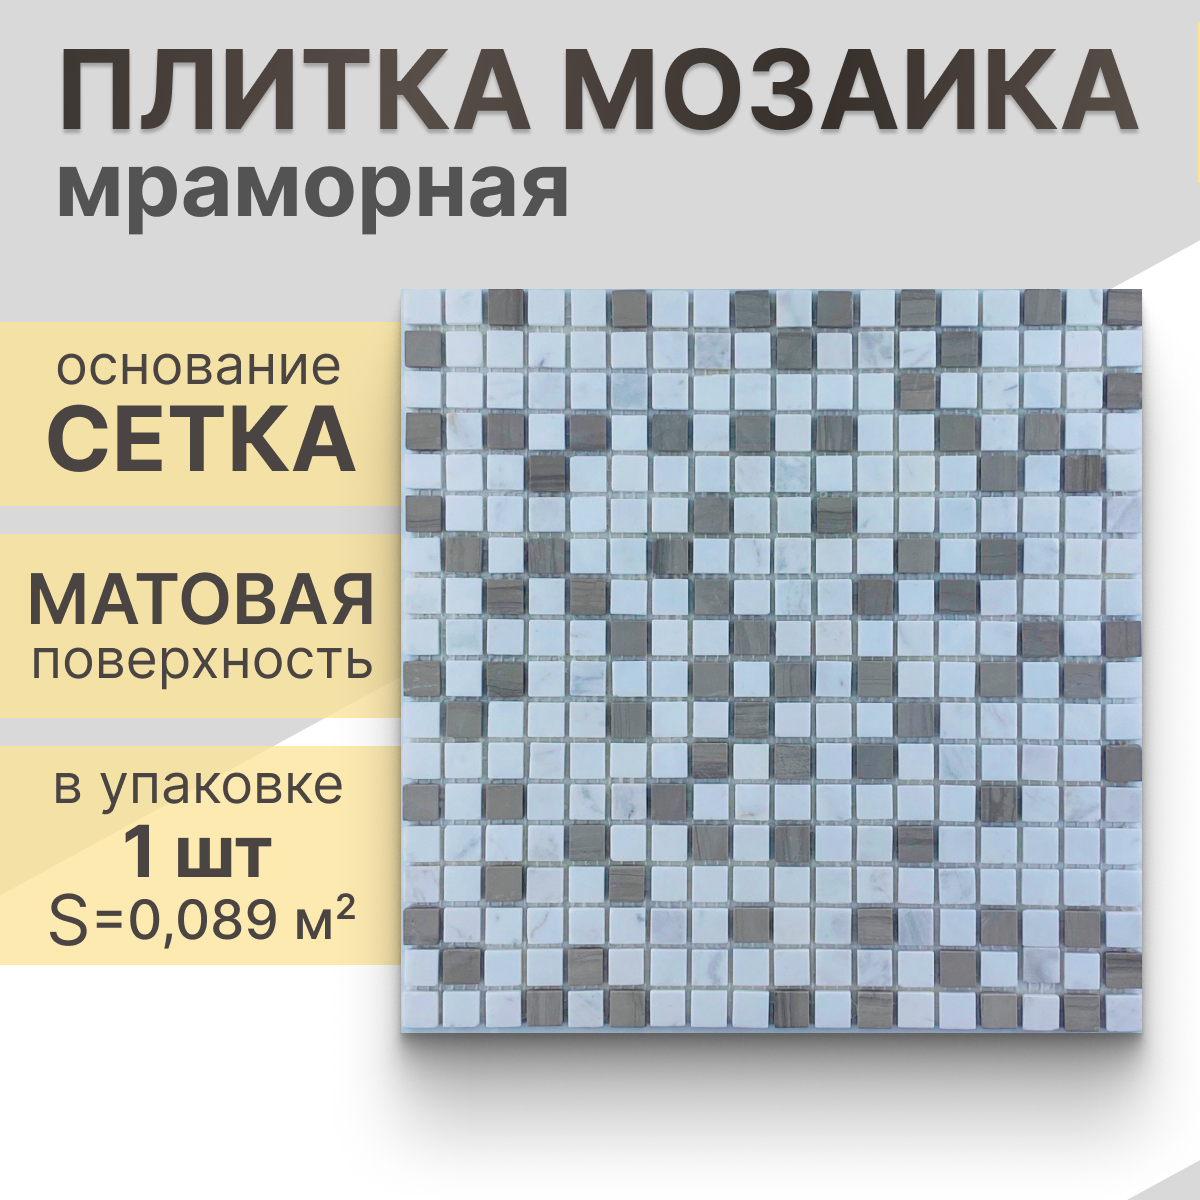 Мозаика (мрамор) NS mosaic Kp-742 30,5x30,5 см 1 шт (0,093 м²)